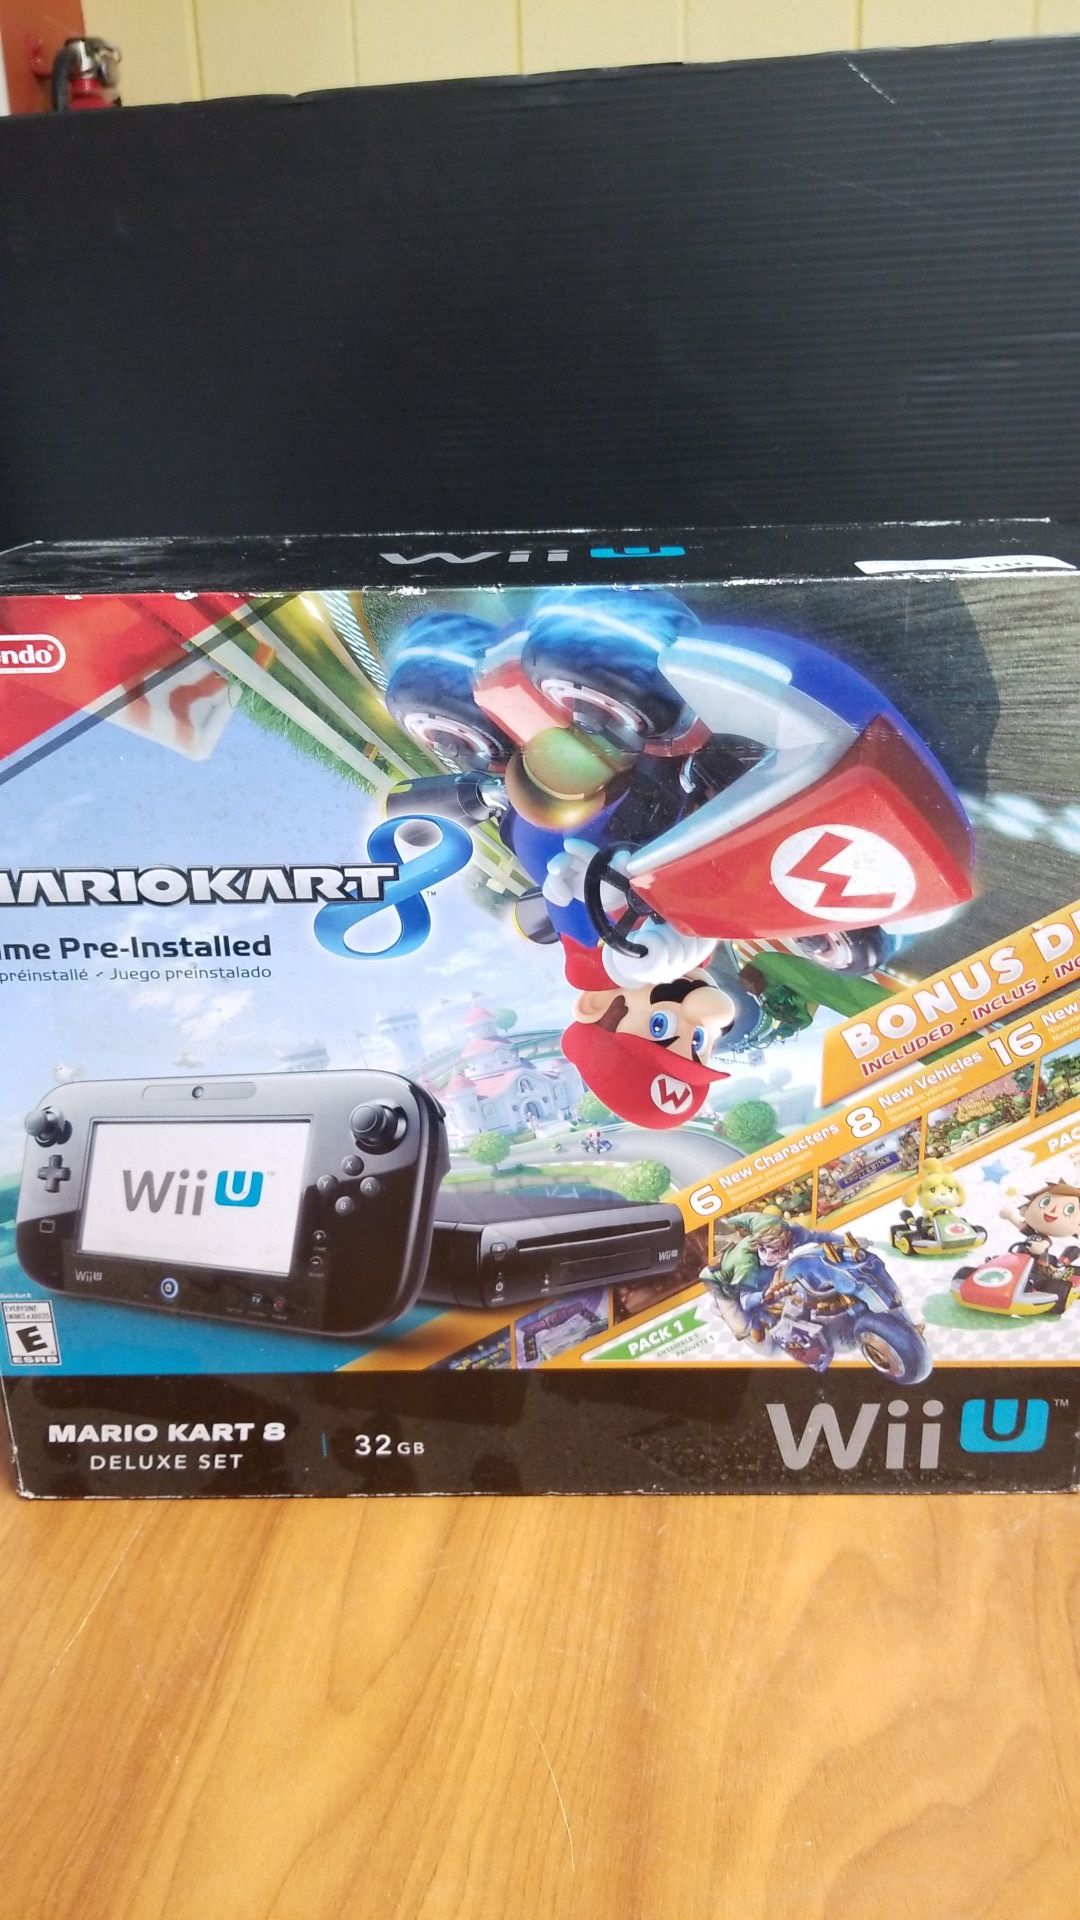 Nintendo Wii U Bundle, Brand New Mario 8 Deluxe Set Edition, Black Console, 32GB